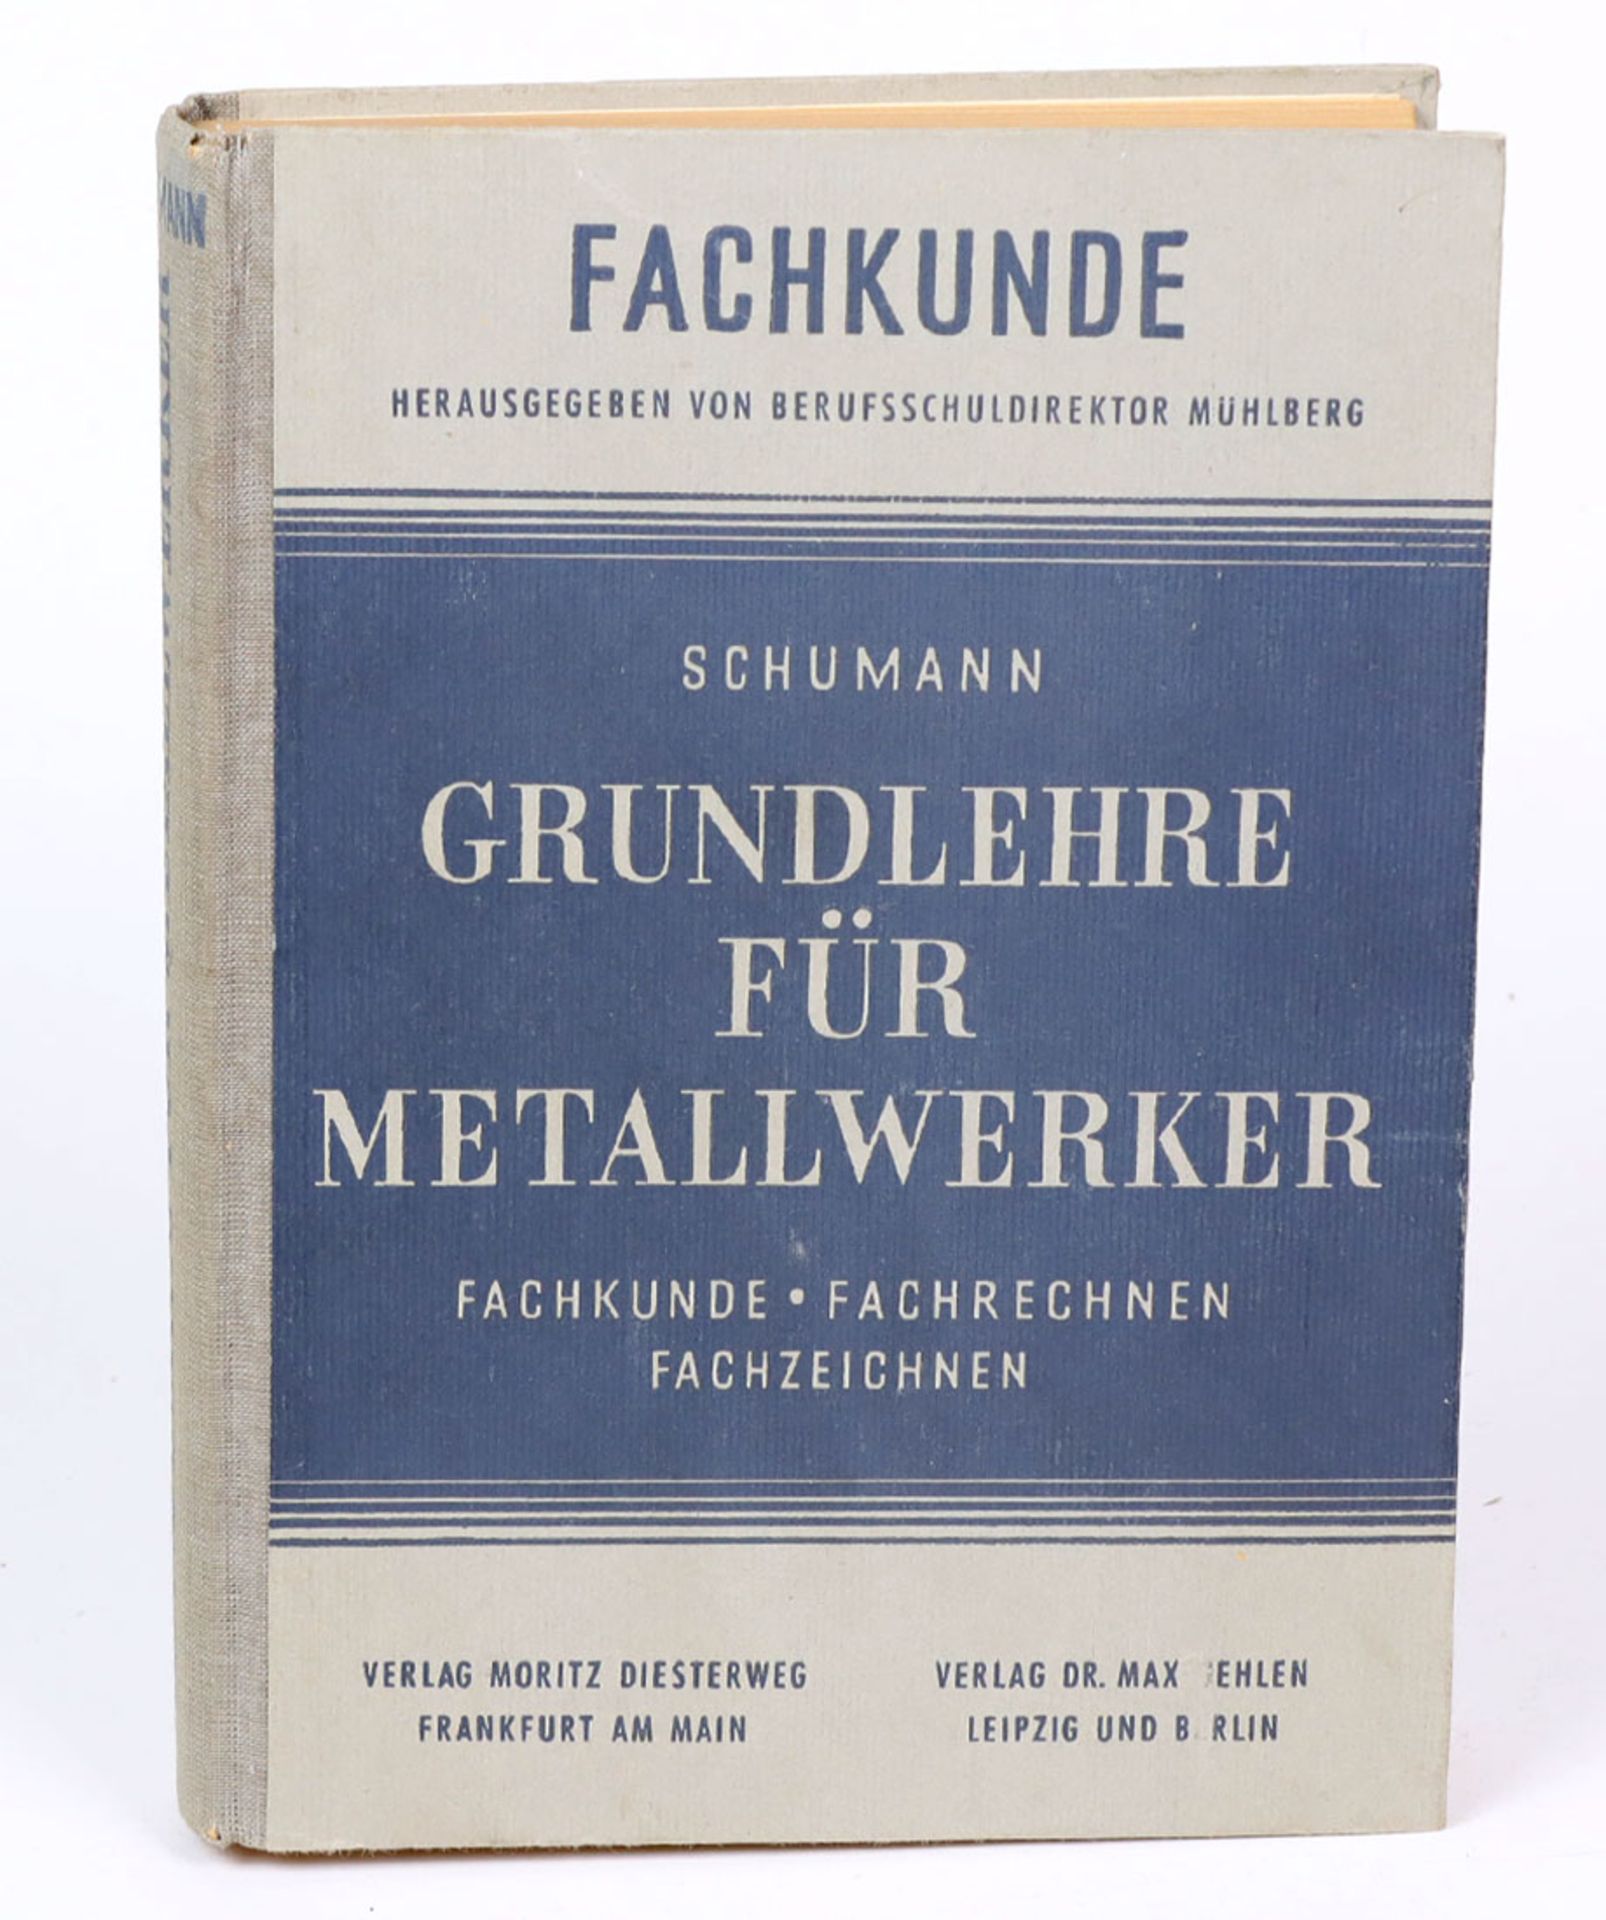 FachkundeGrundlehre für Metallwerker, Fachkunde, Fachrechnen, Fachzeichnen, v. Schuhmann, hrsg. v.